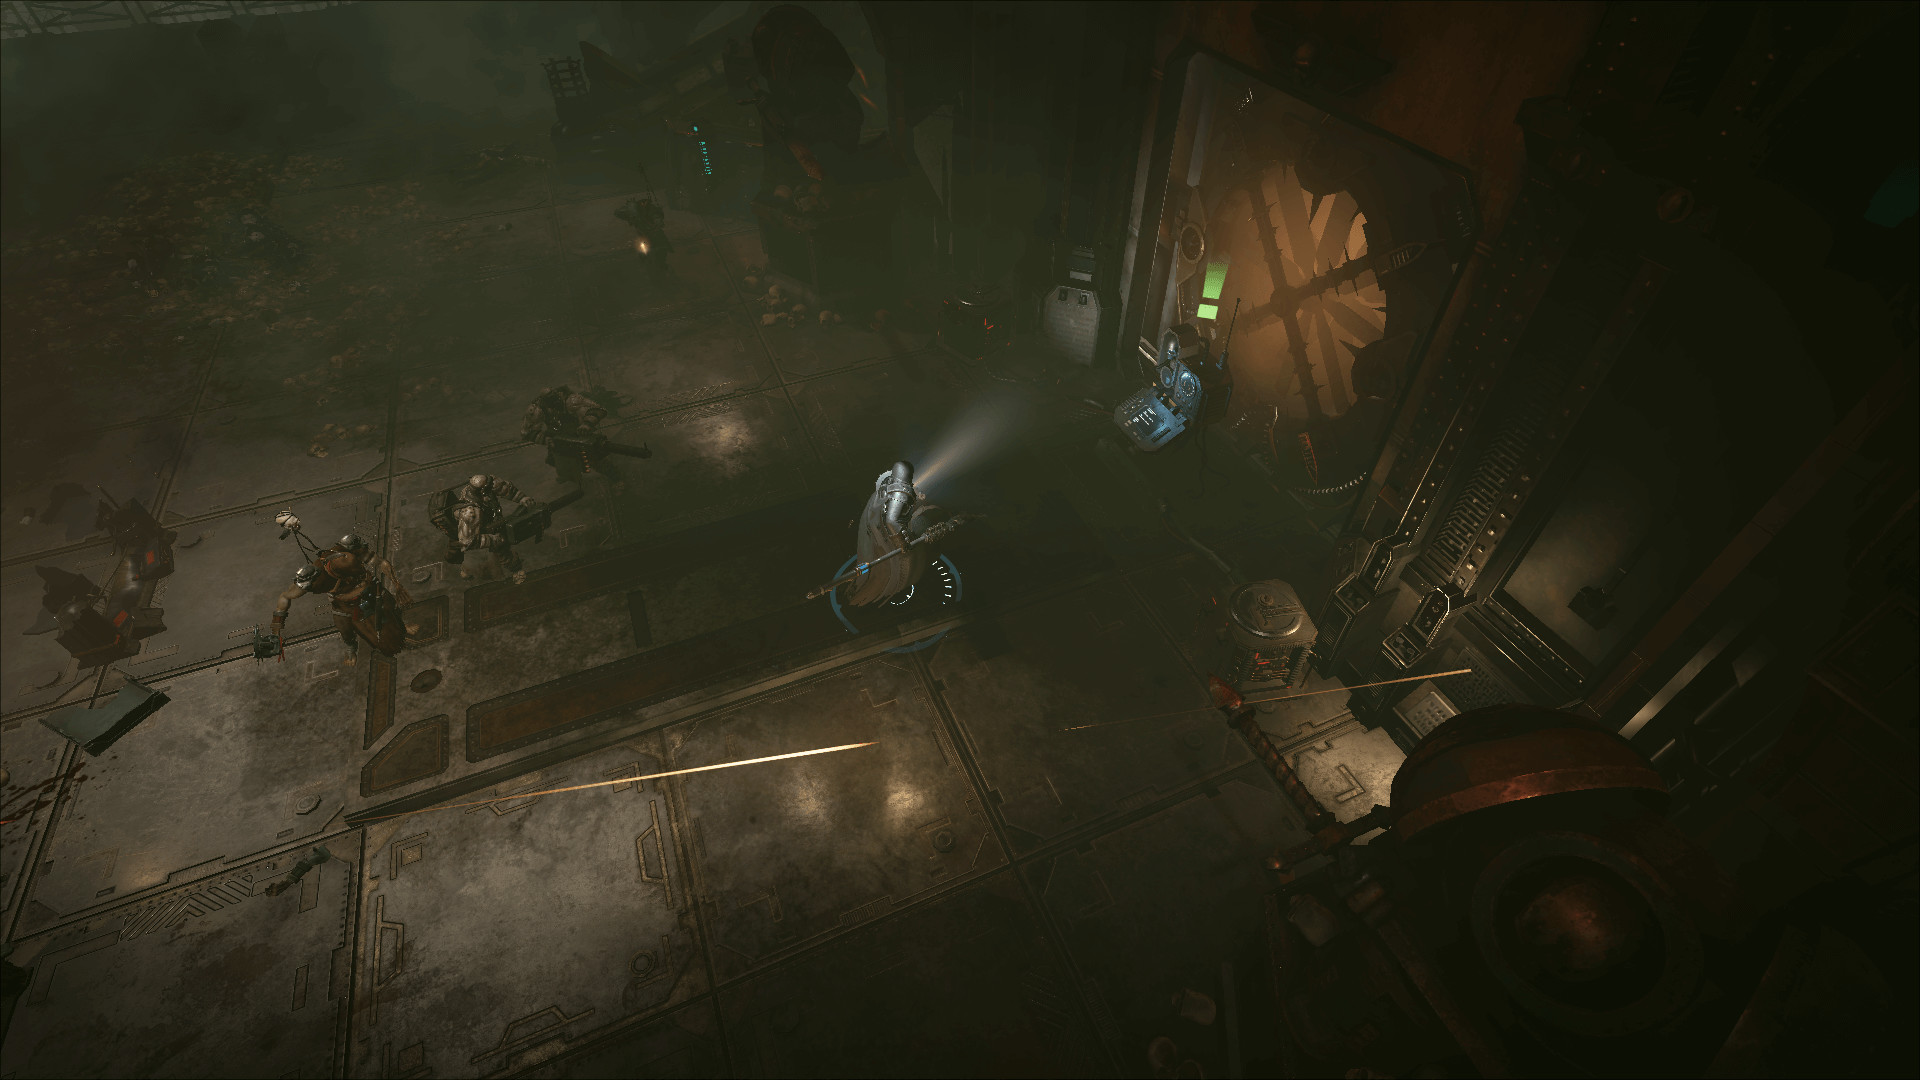 Een inquisiteur benadert een console in een donkere kamer, uit het spel warhammer Inquisitor - Martyr